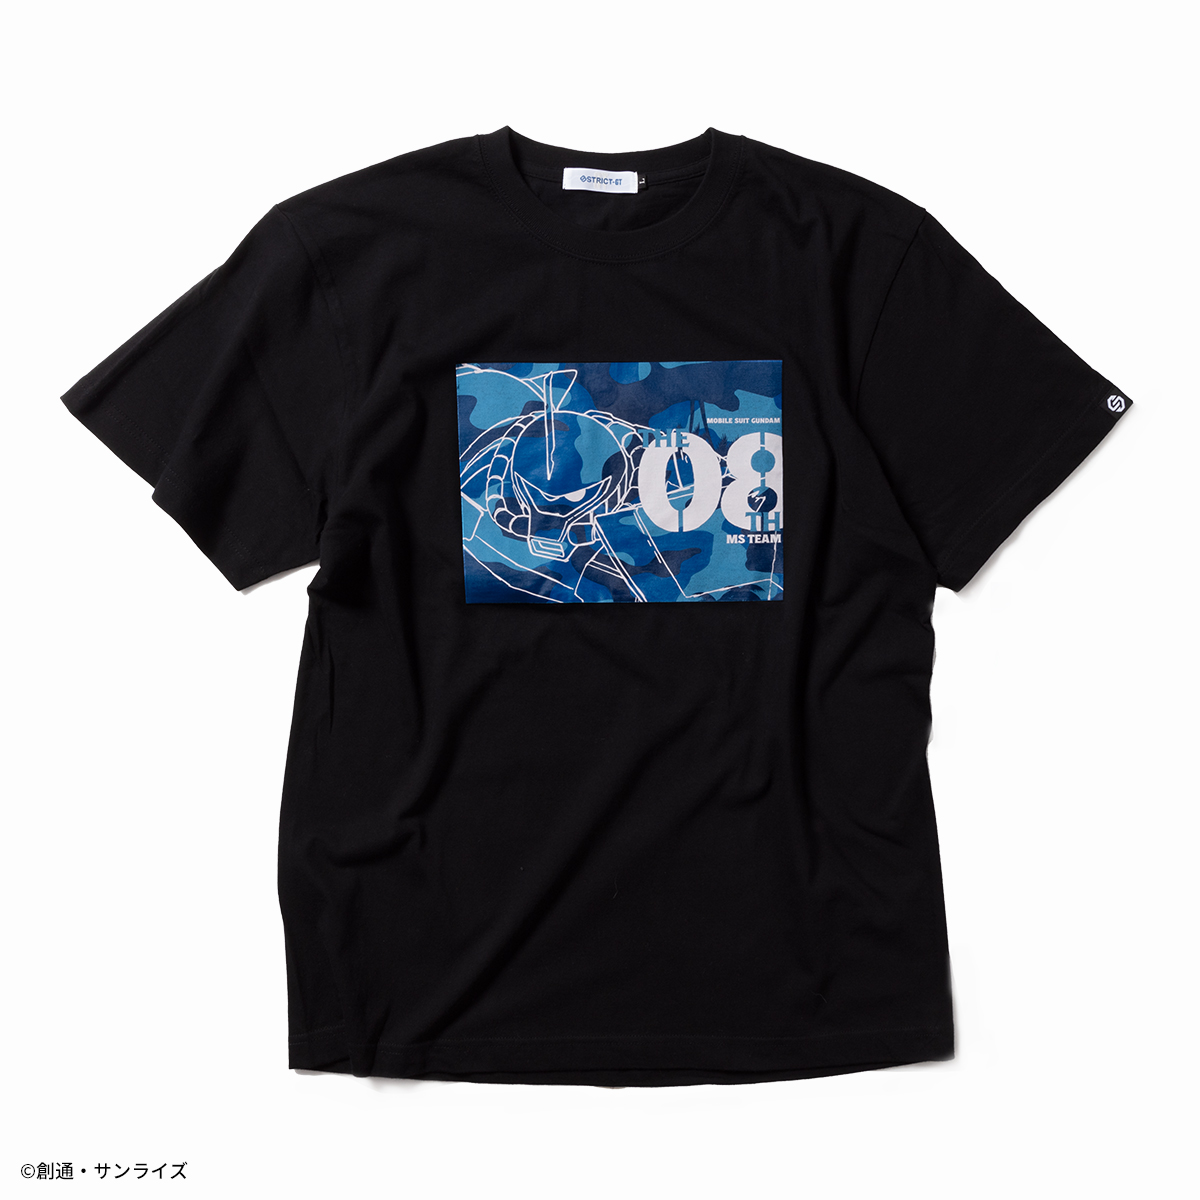 『機動戦士ガンダム 第08MS小隊』より新作アパレルコレクションを展開!Tシャツ、長袖Tシャツ、長袖ワークシャツの新柄が登場!